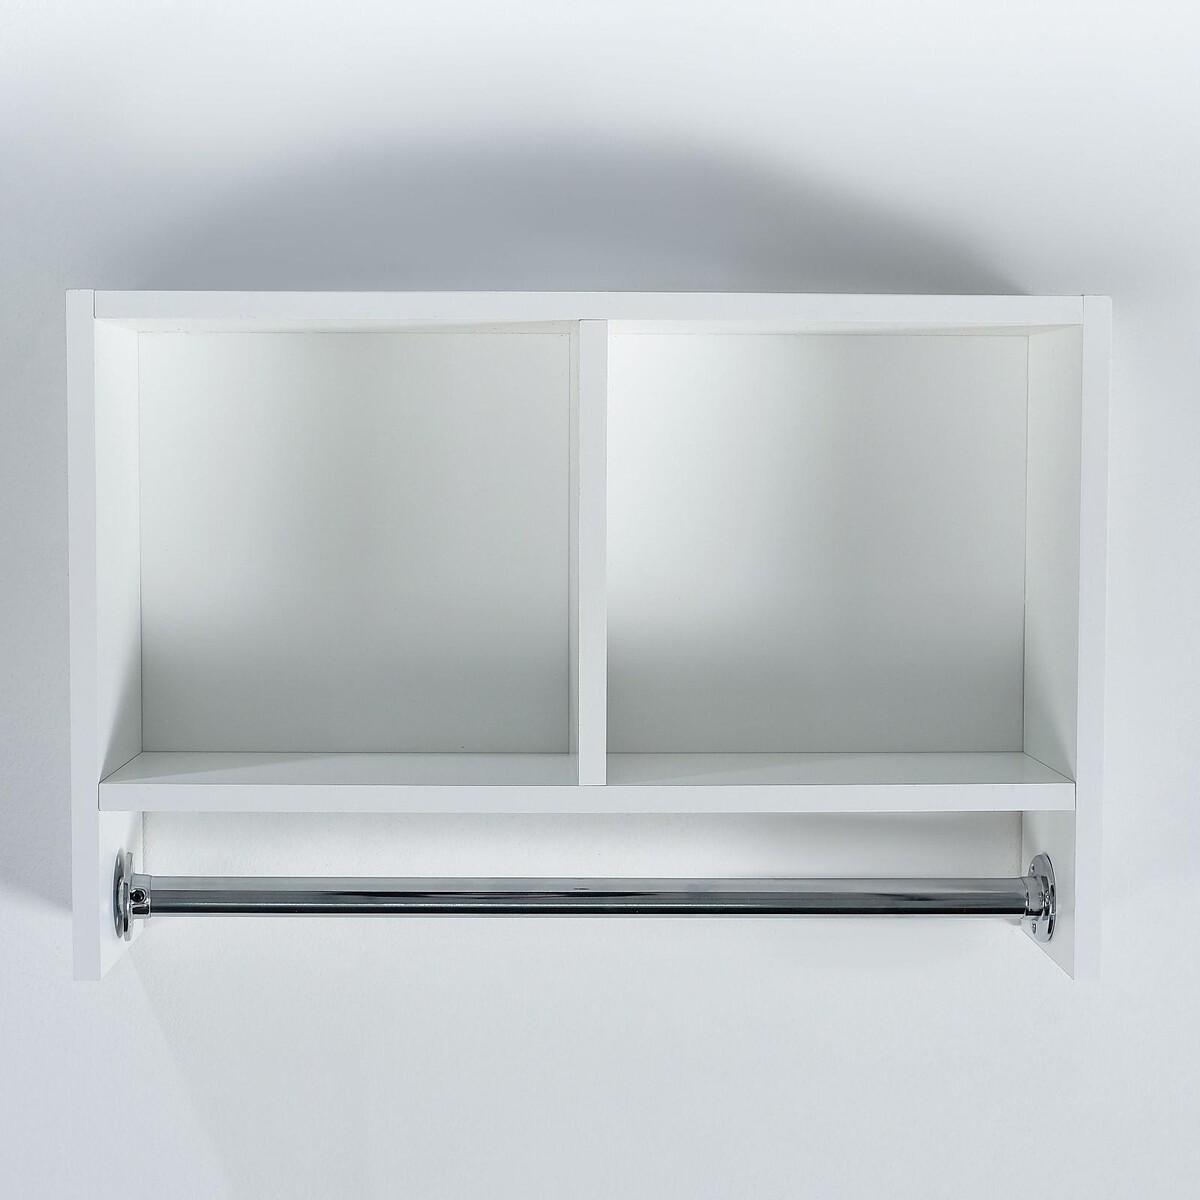 Шкаф подвесной для ванной комнаты со штангой для полотенец белый, 60 х 15,4 х 40 см пылесос ручной poolmagic 13 5 метров со щёткой aluminum штангой